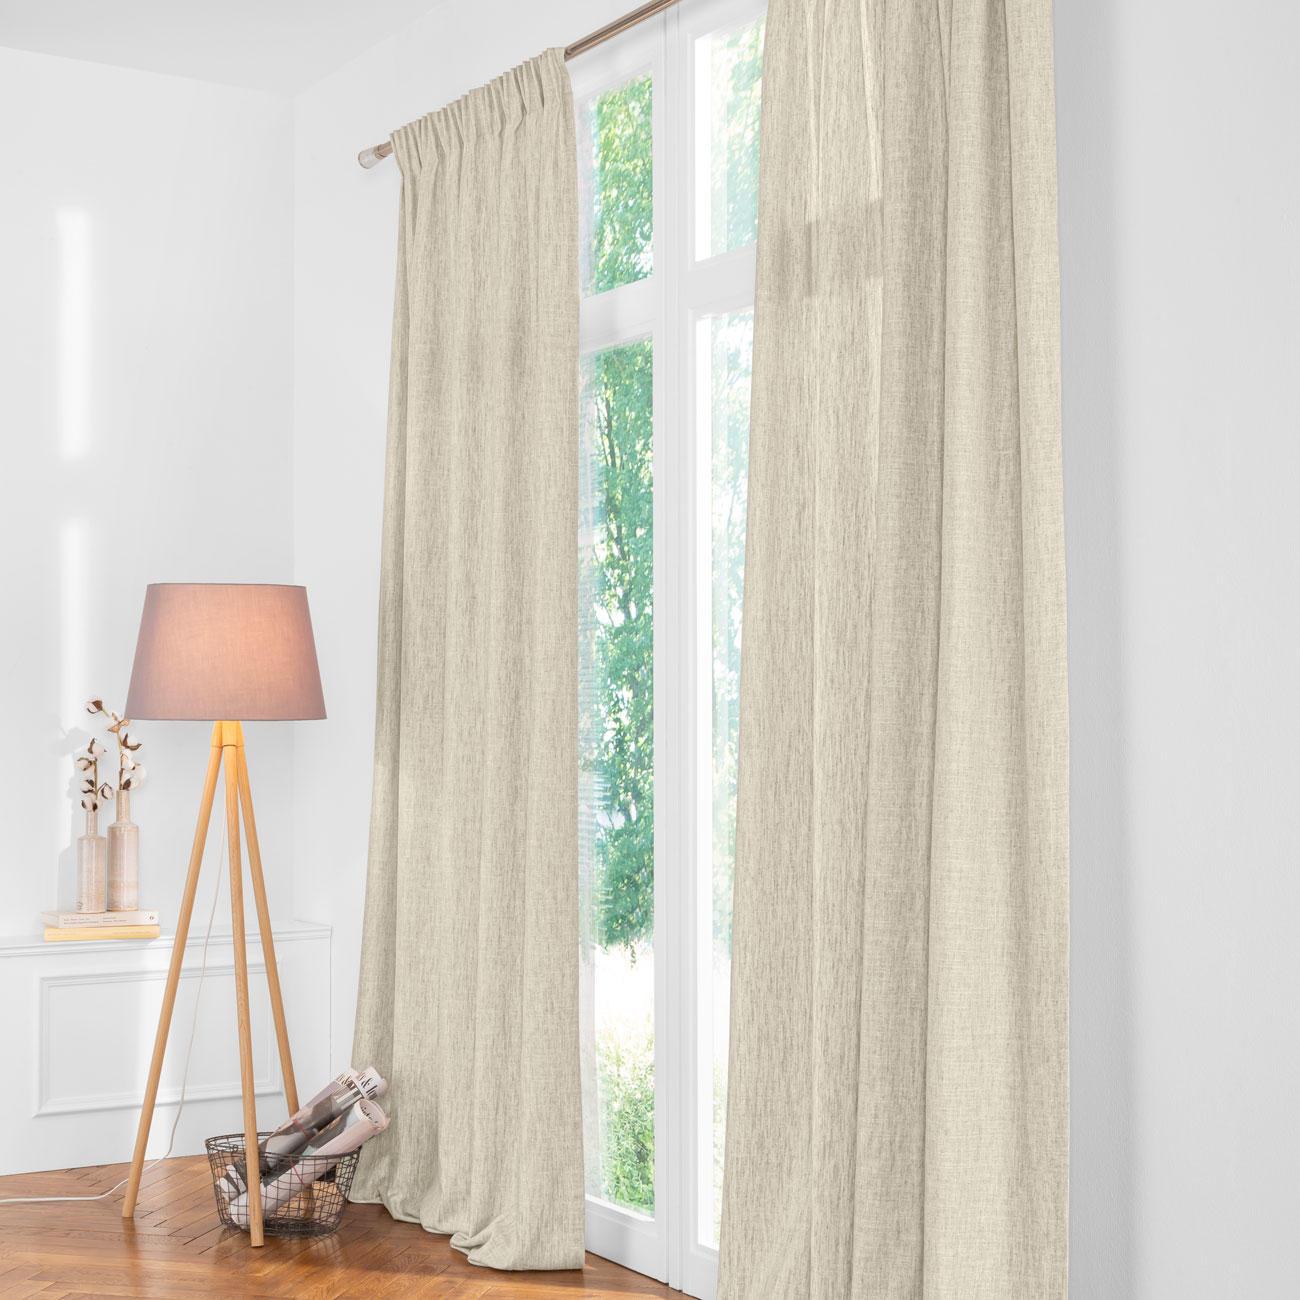 1pc Mode Bunte Gedruckte Vorhang, Fensterbehandlung Vorhang Für